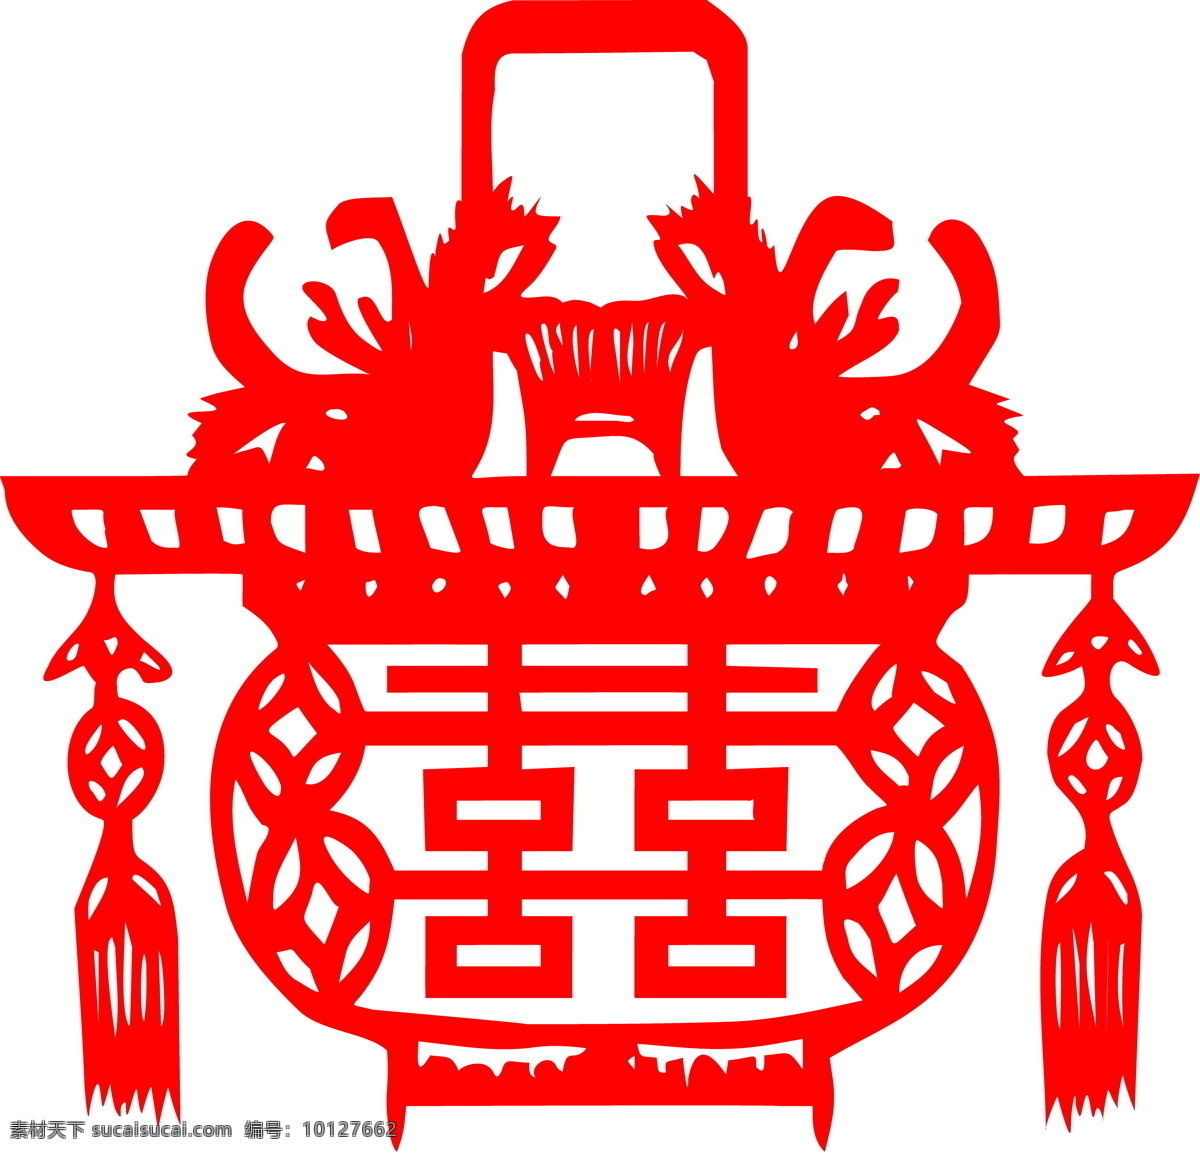 红双喜 囍 民俗剪纸 中国传统 矢量素材 设计素材 中华图典 矢量图库 白色